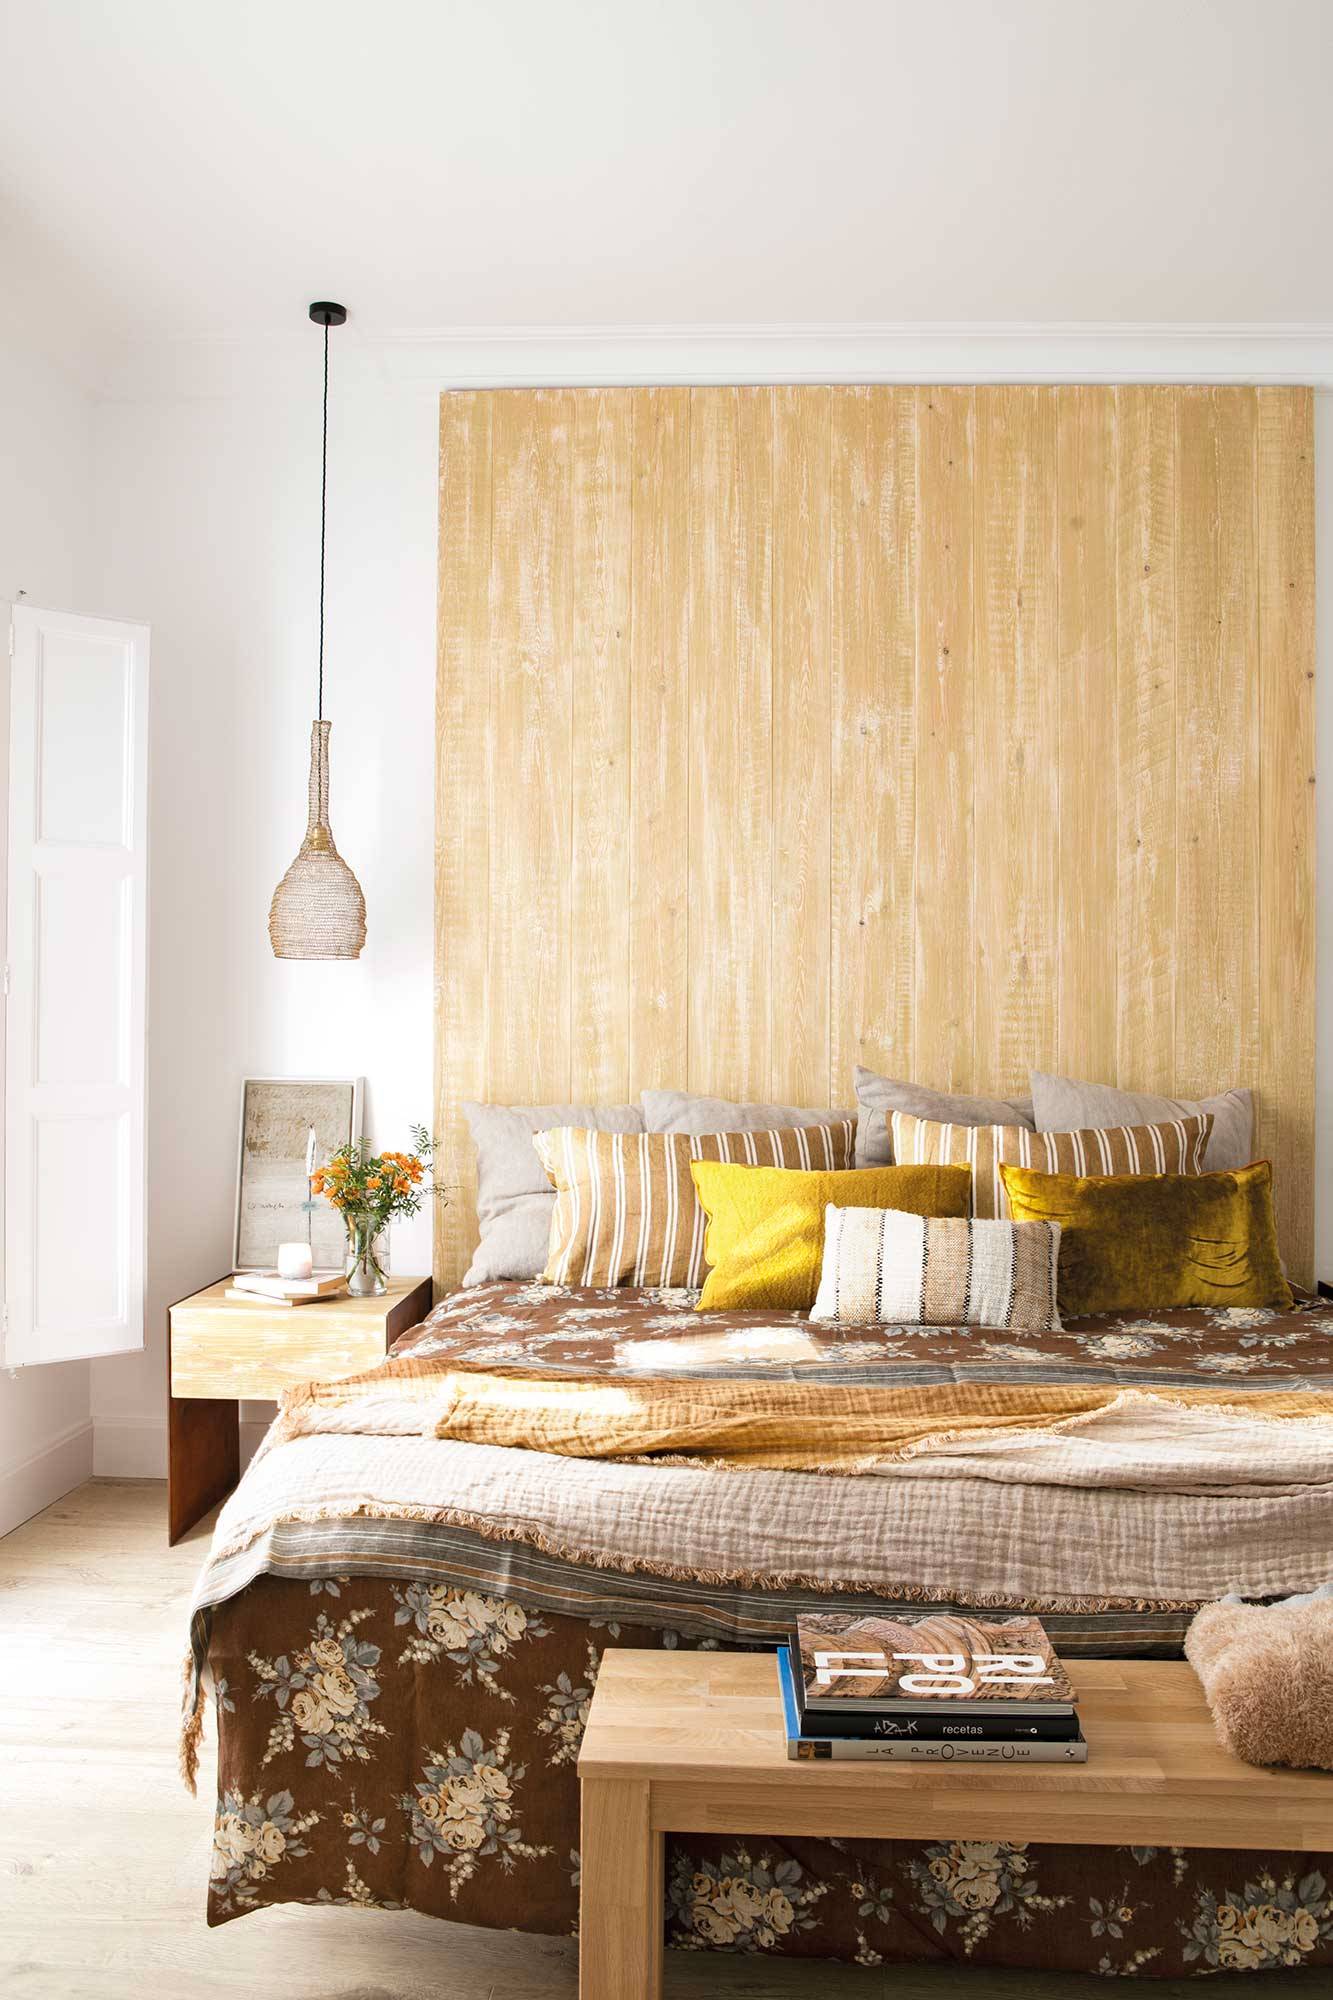 Dormitorio con maxi cabecero de madera y ropa de cama de colores de otoño_00514952